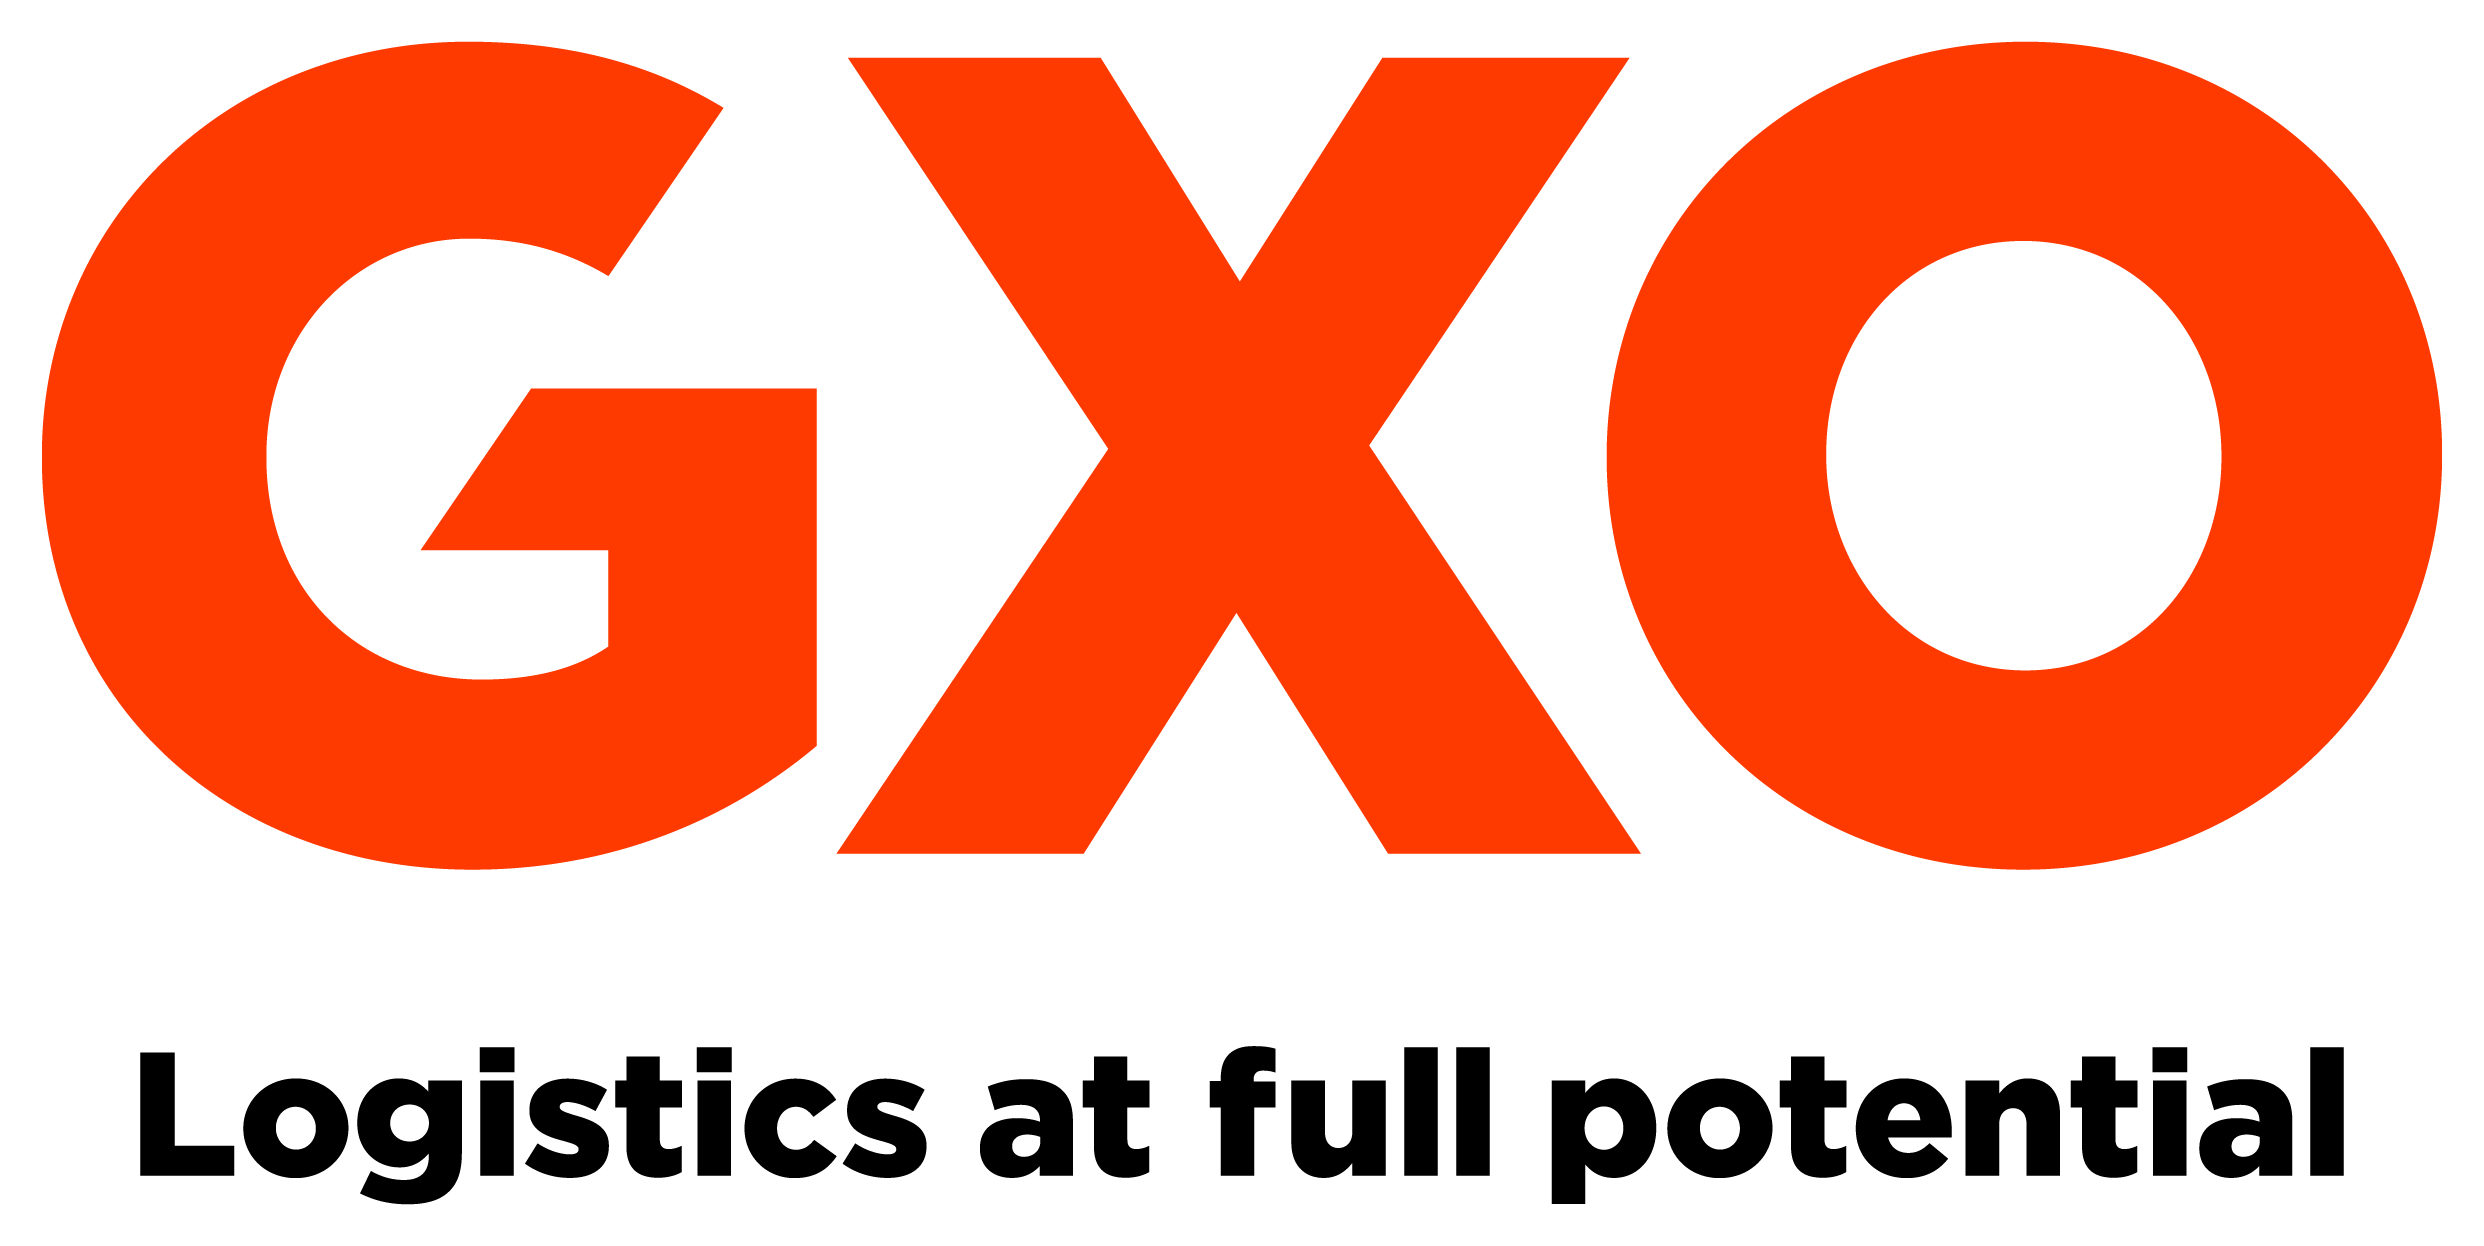 Logo GXO